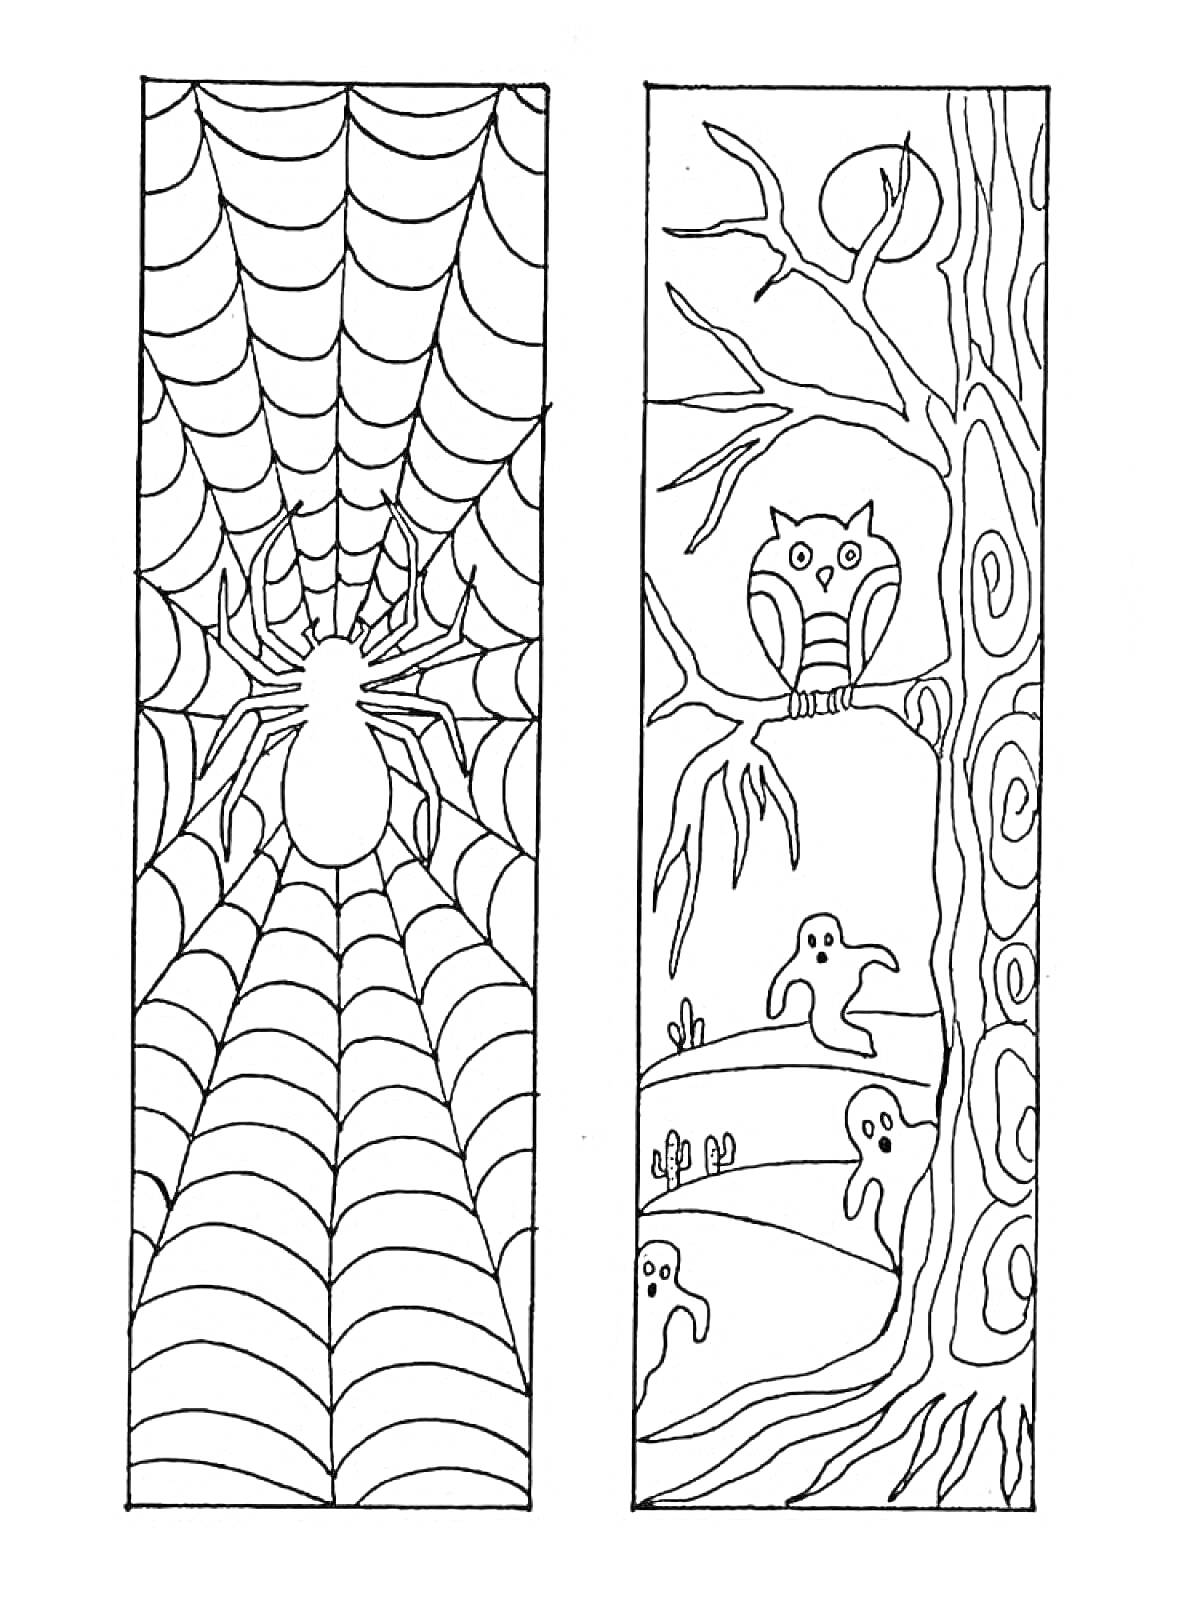 Раскраска закладка с пауком на паутине и закладка с совой на дереве и призраками